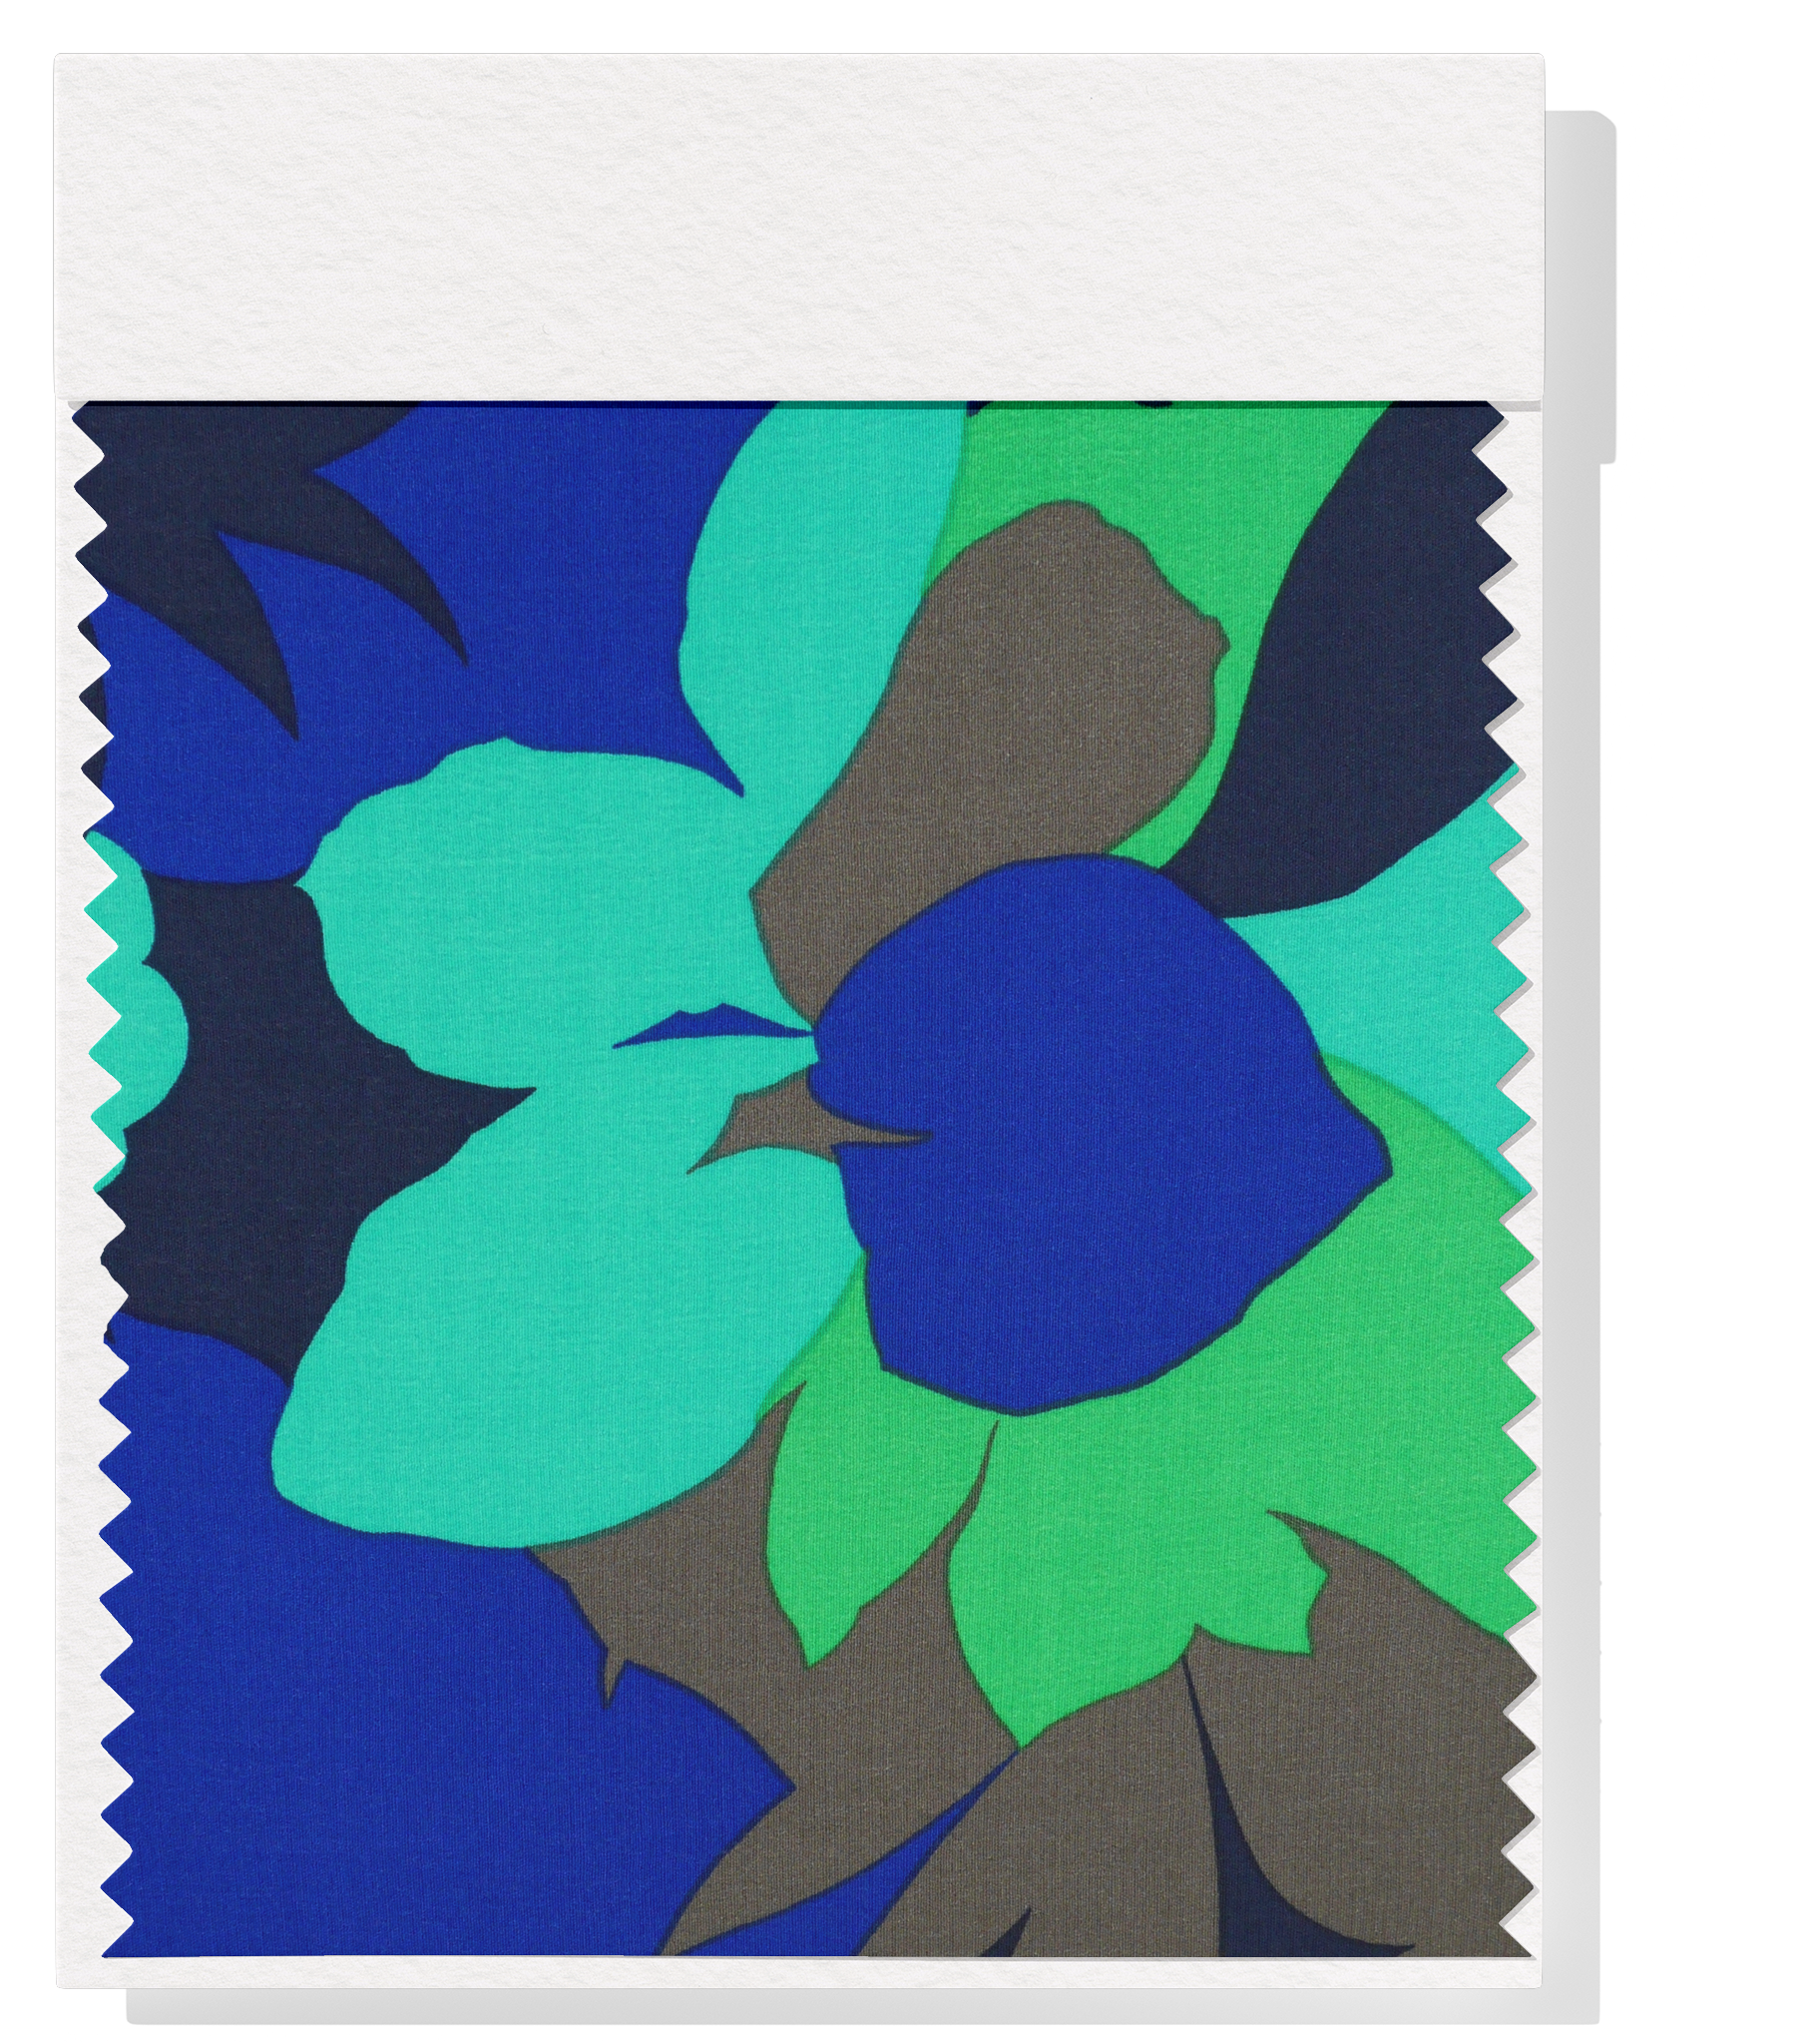 Viscose/ Rayon Crepe Print $22.00p/m - Green, Royal, Teal